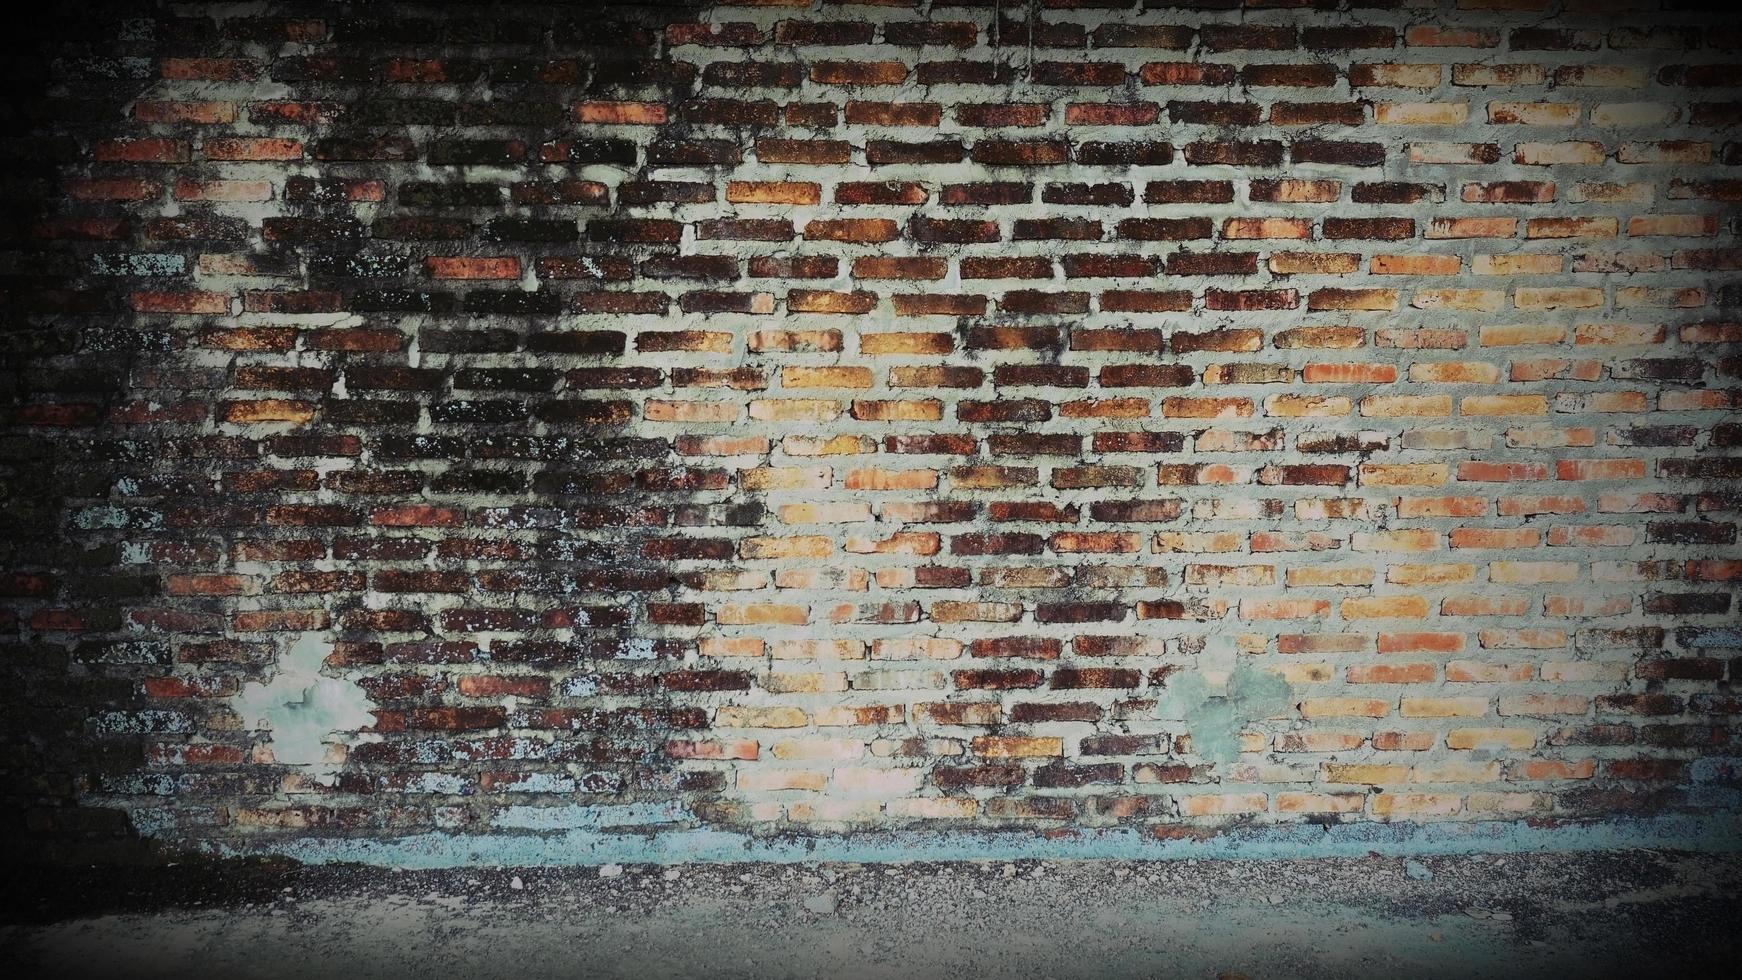 oude bakstenen muur heeft bruine vlekken en krassen. verlaten architectuur is iets verschrikkelijks. foto